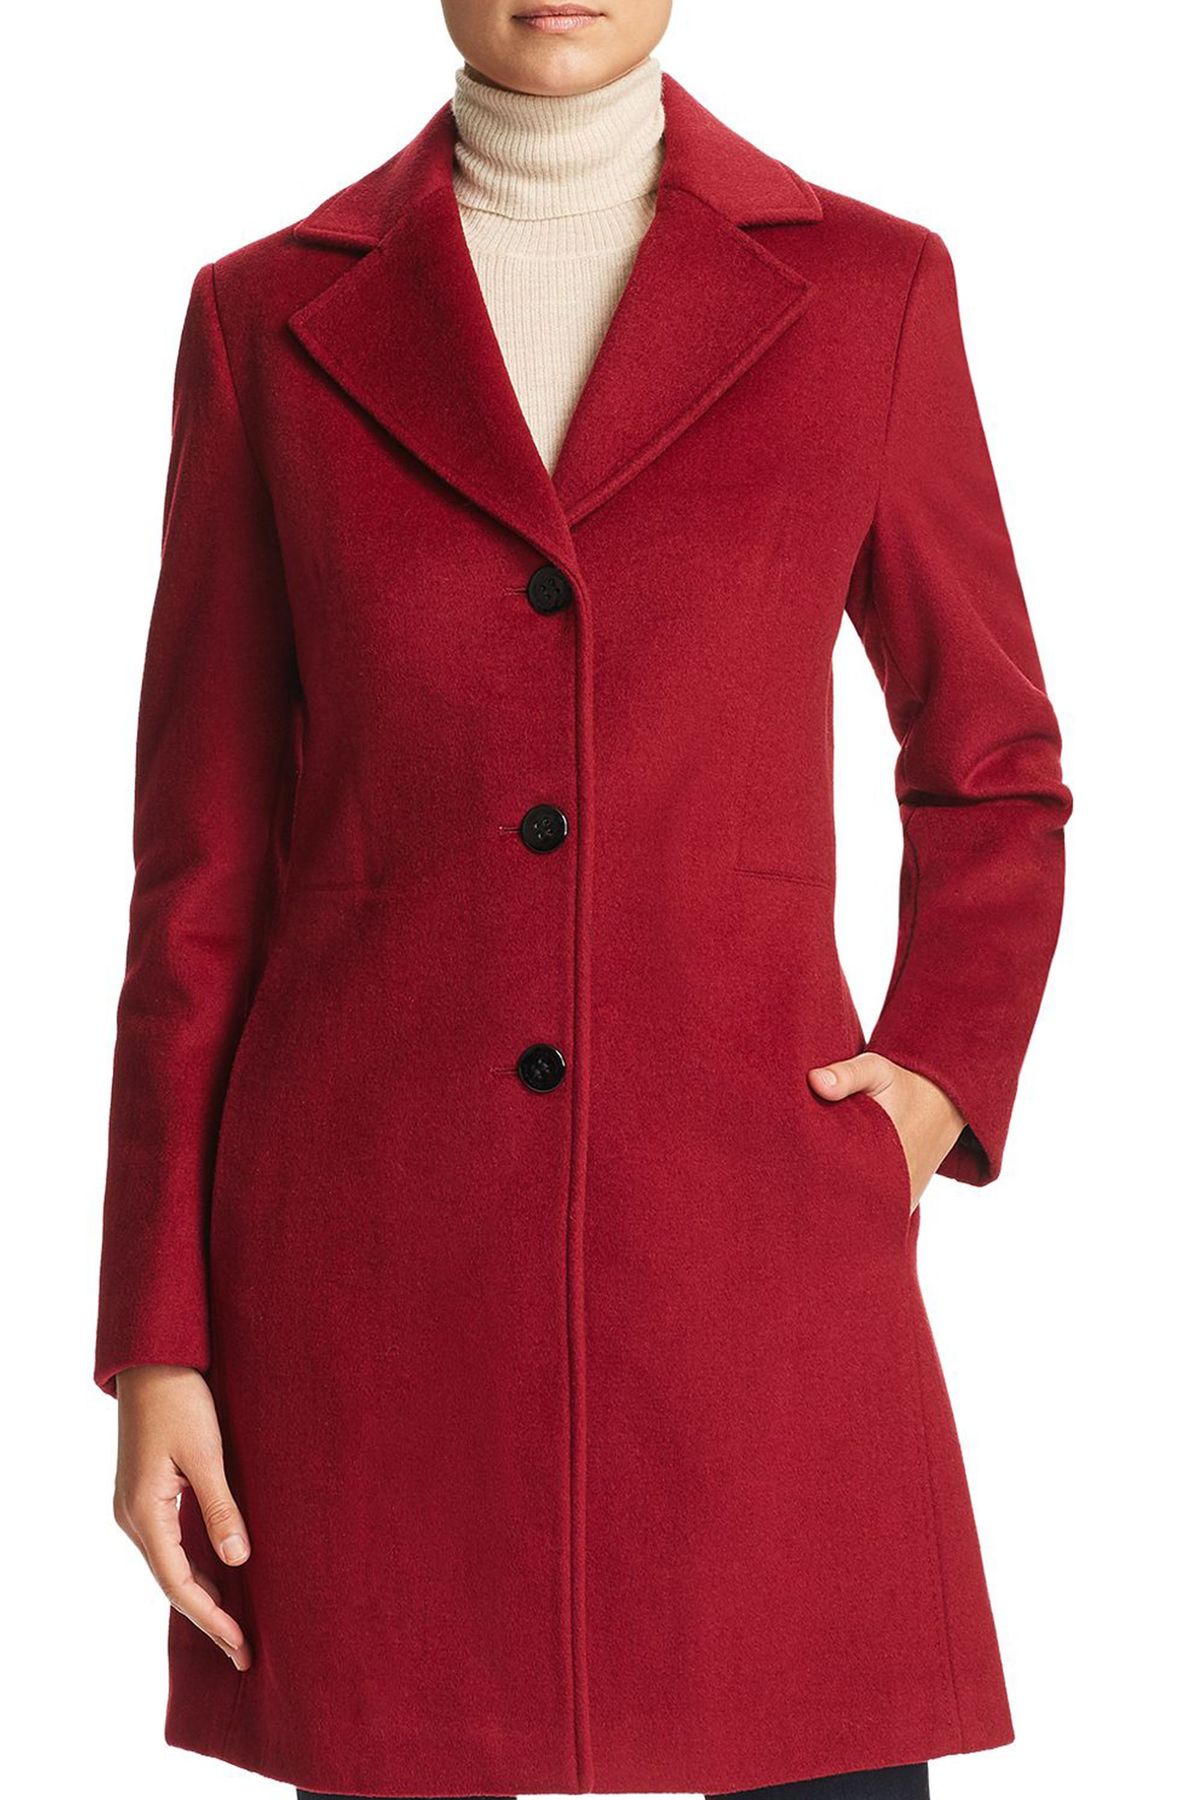 Παλτό με κόκκινο κουμπί